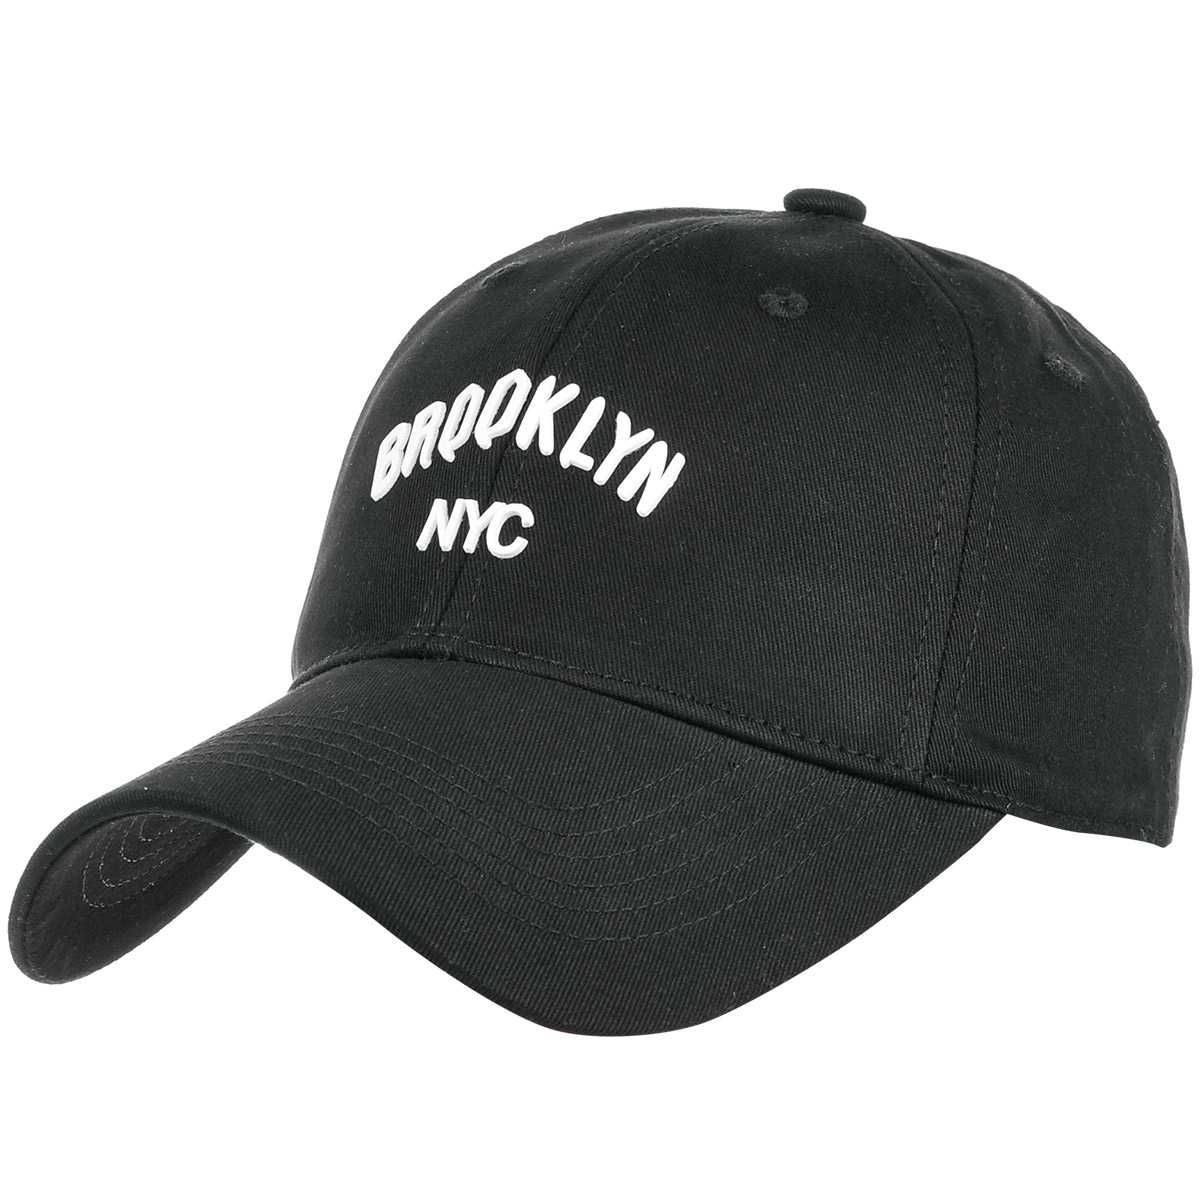 Czapka z daszkiem, baseballówka Brooklyn, regulowana czapka